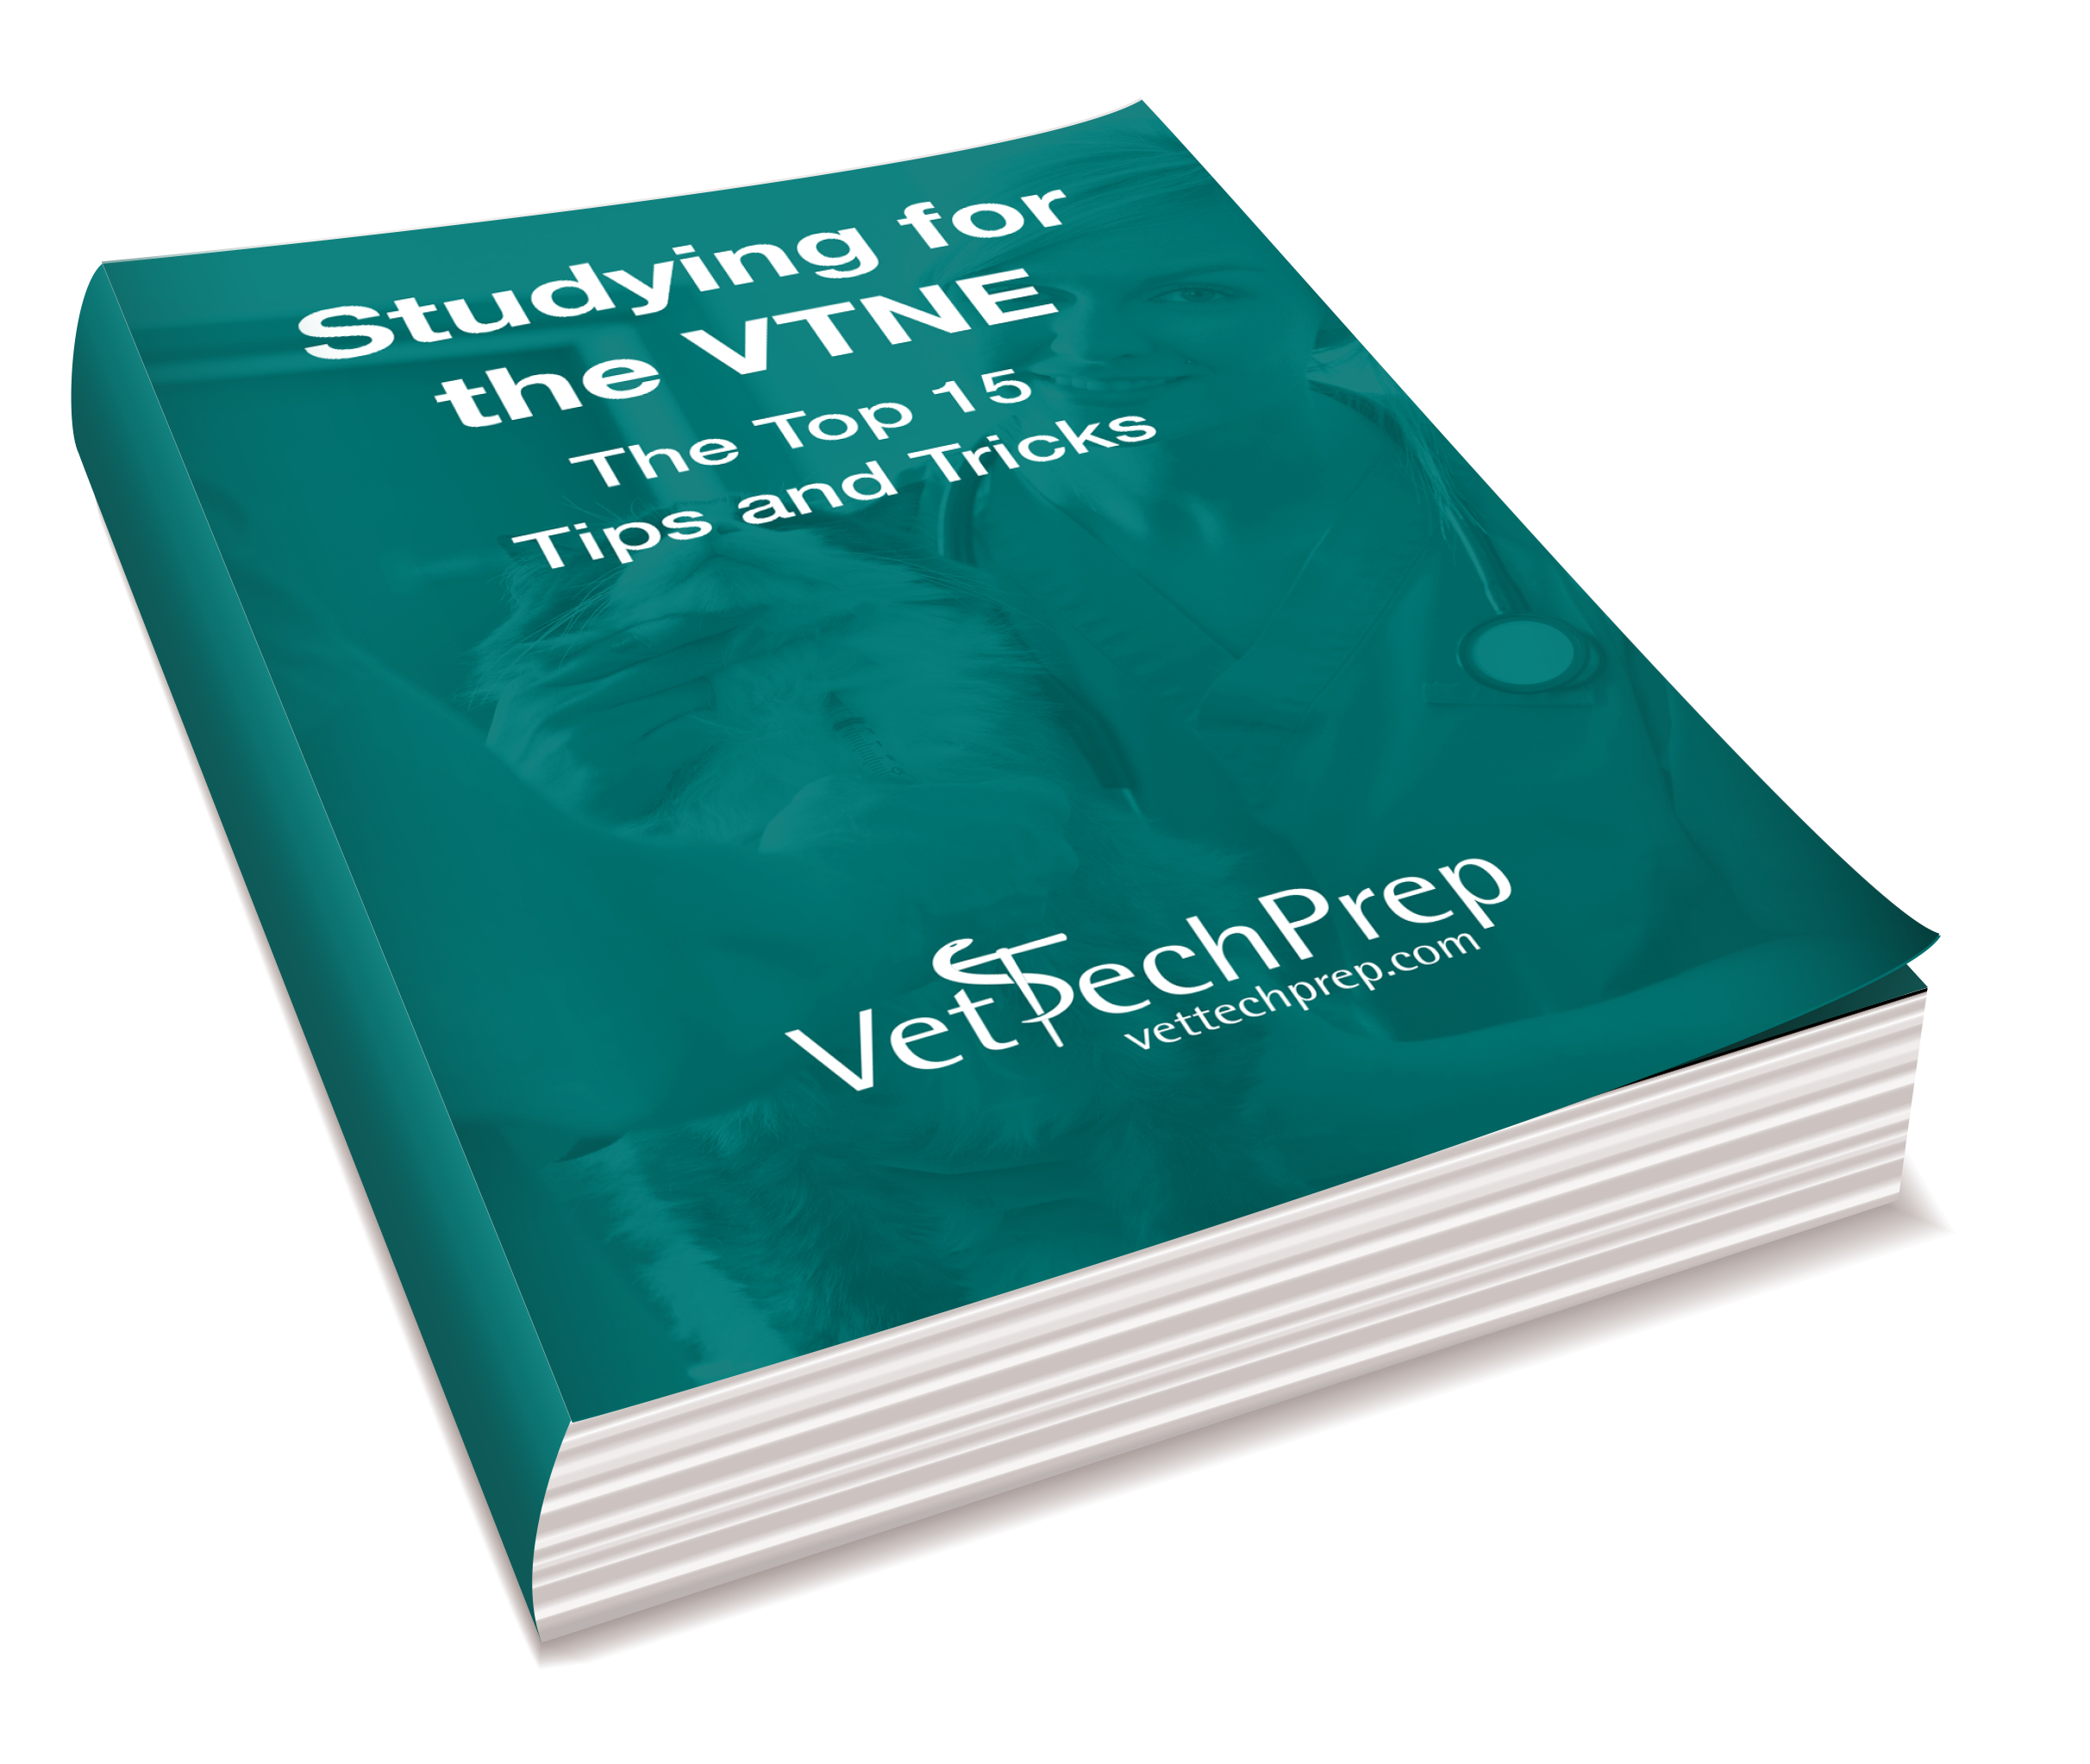 vtne study guide book